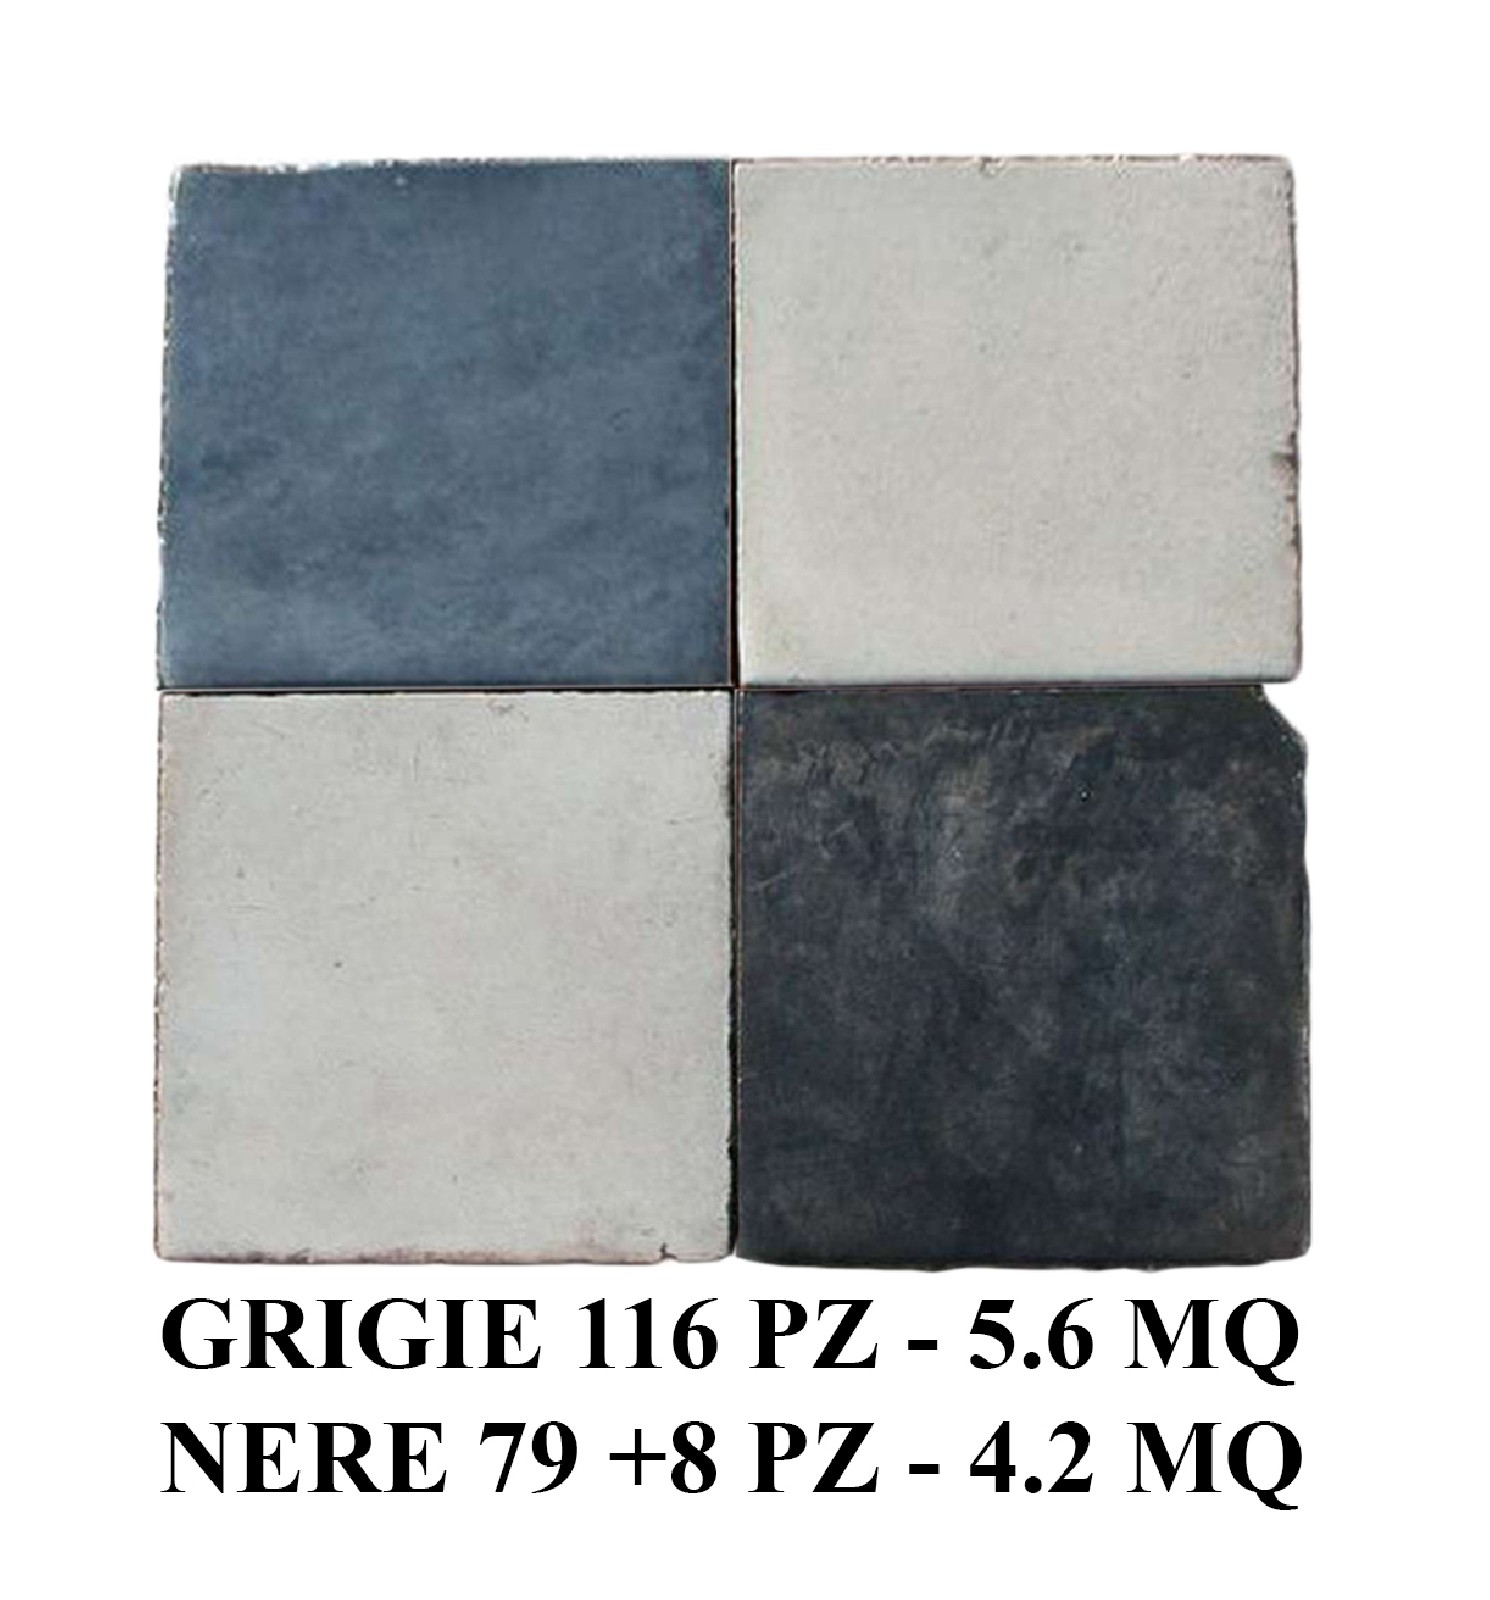 Antica pavimentazione in cementine cm 22x22 - 1